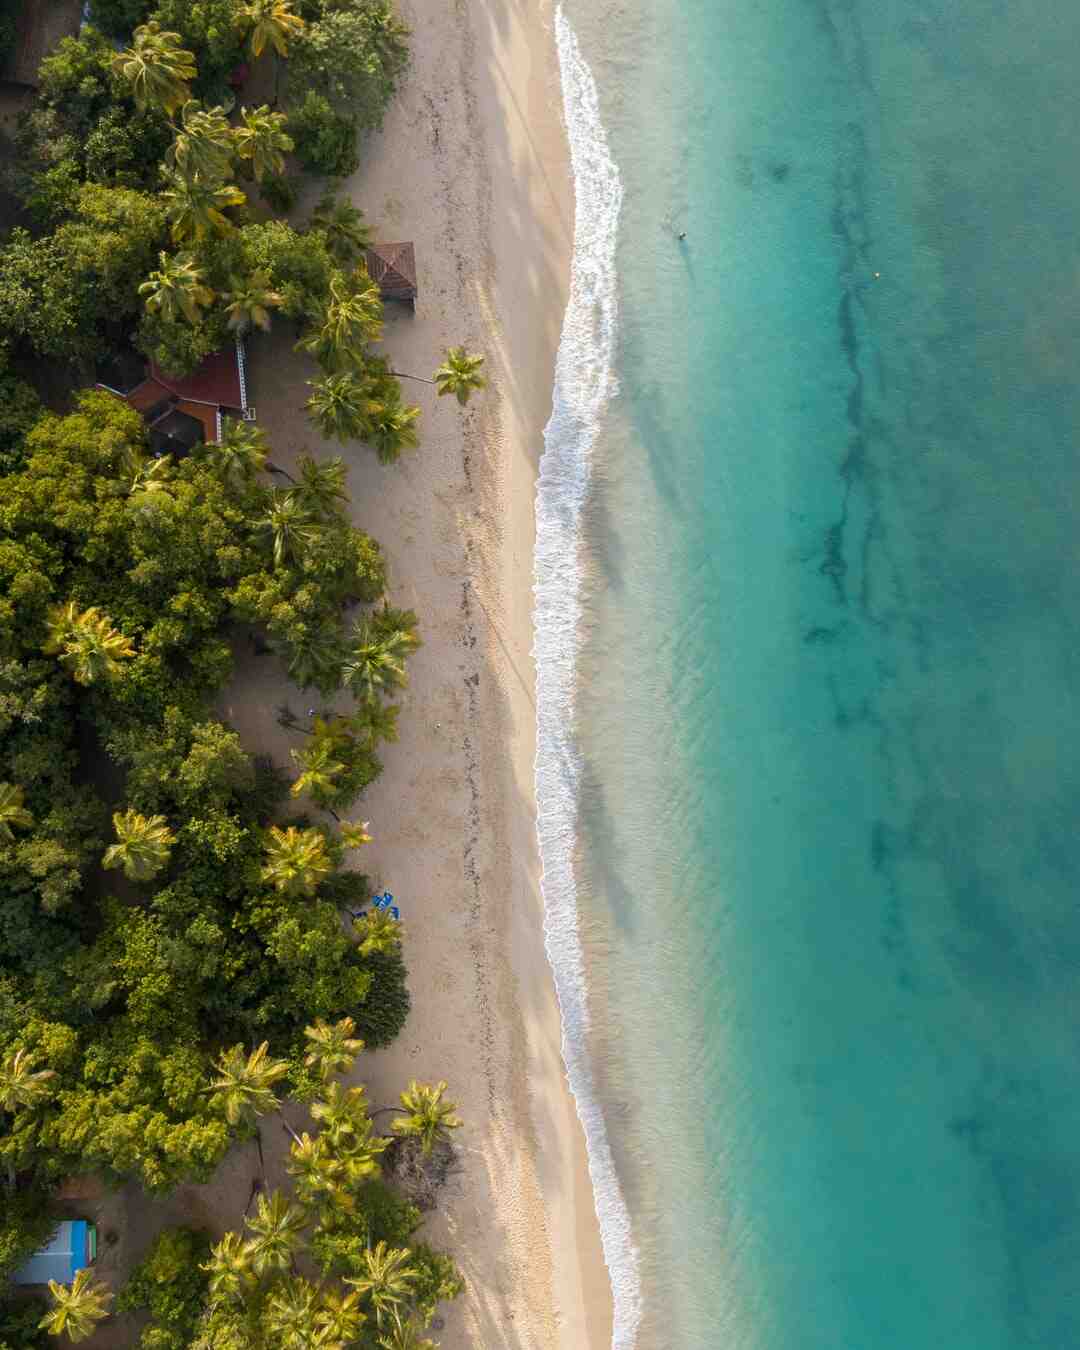 Quelle est la meilleure saison pour aller en Martinique ?